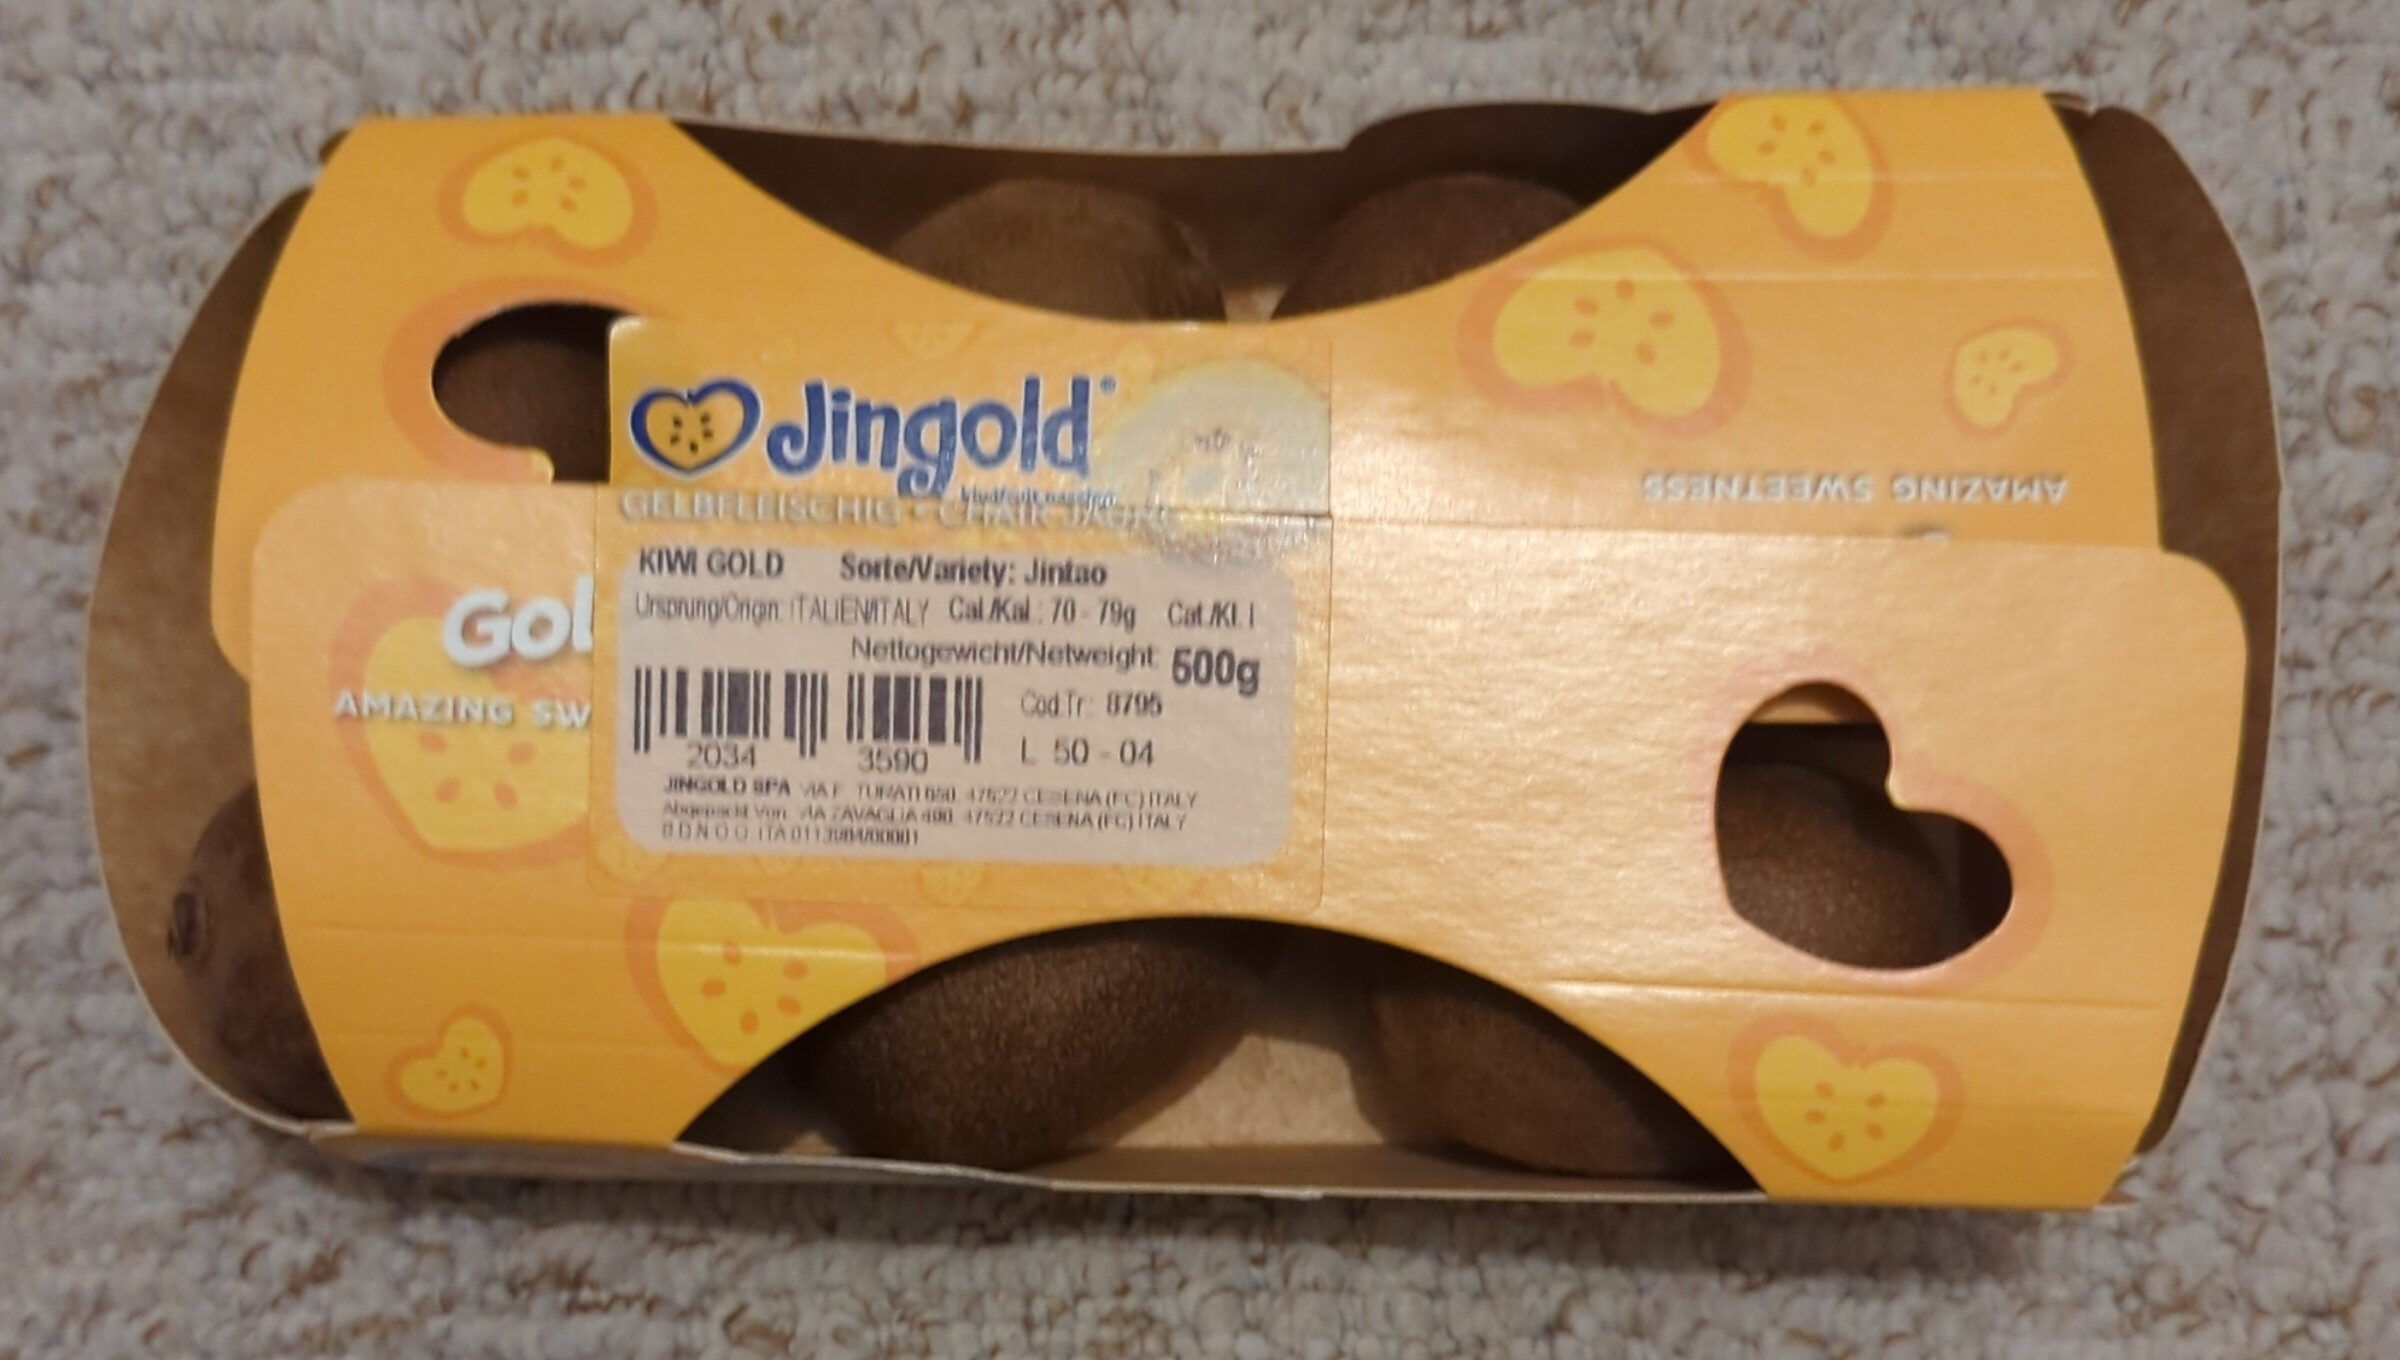 Kiwi Gold - Product